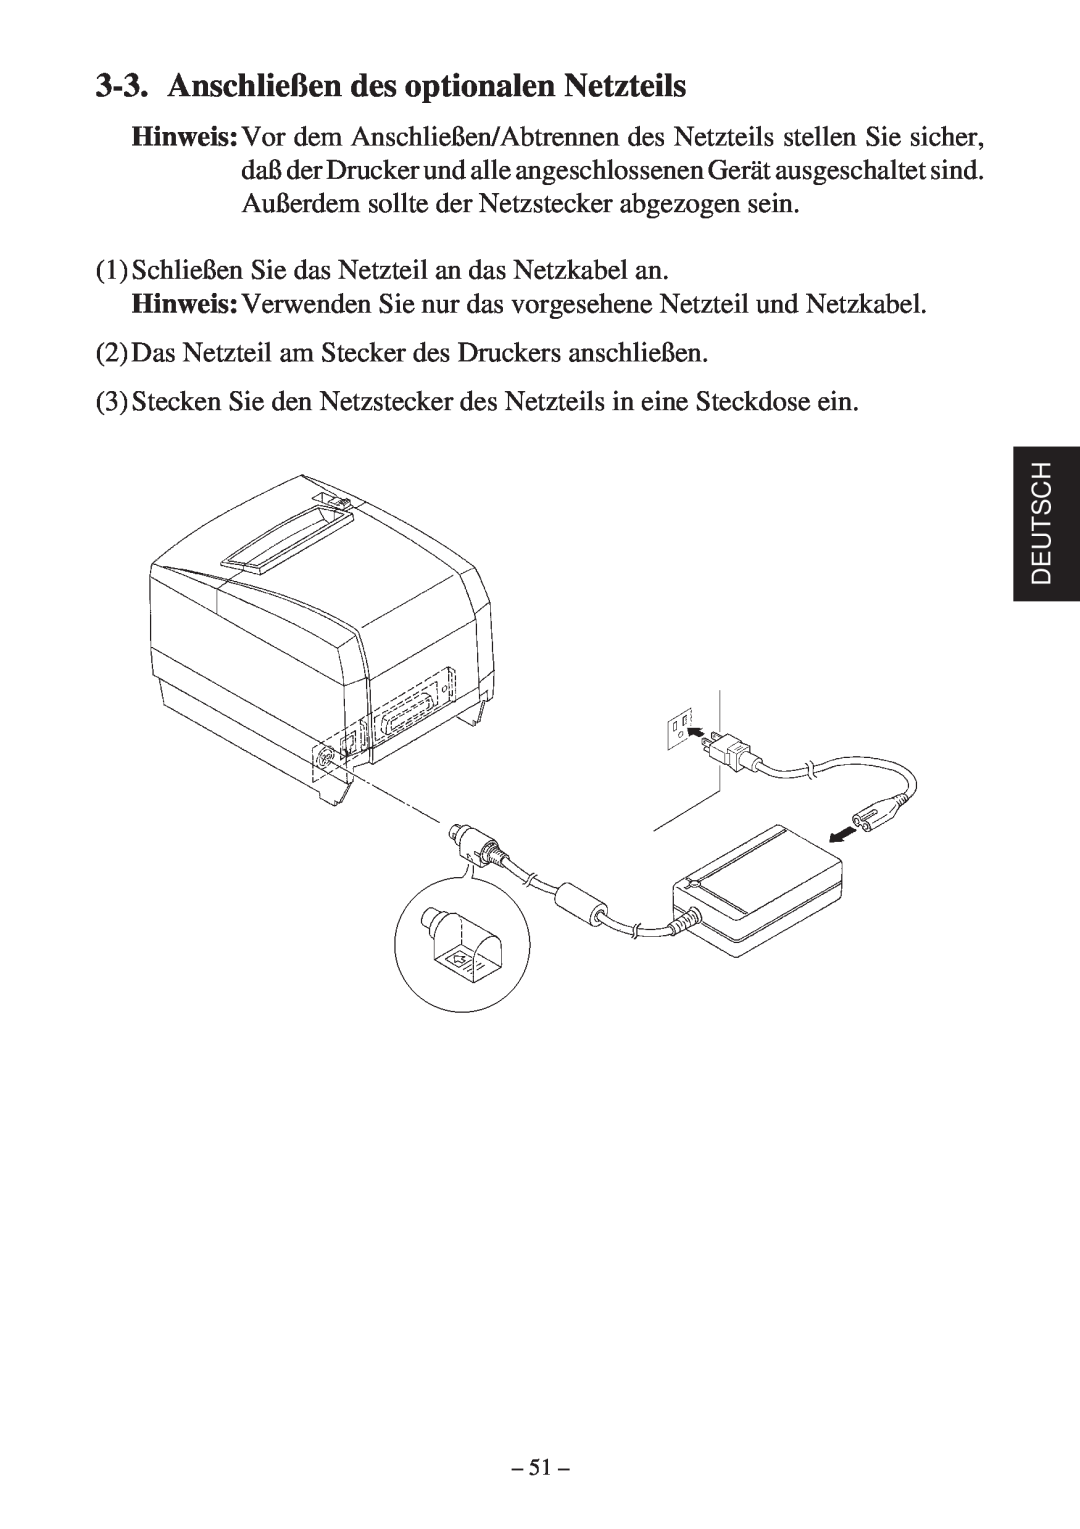 Star Micronics TSP2000 user manual Anschließen des optionalen Netzteils 